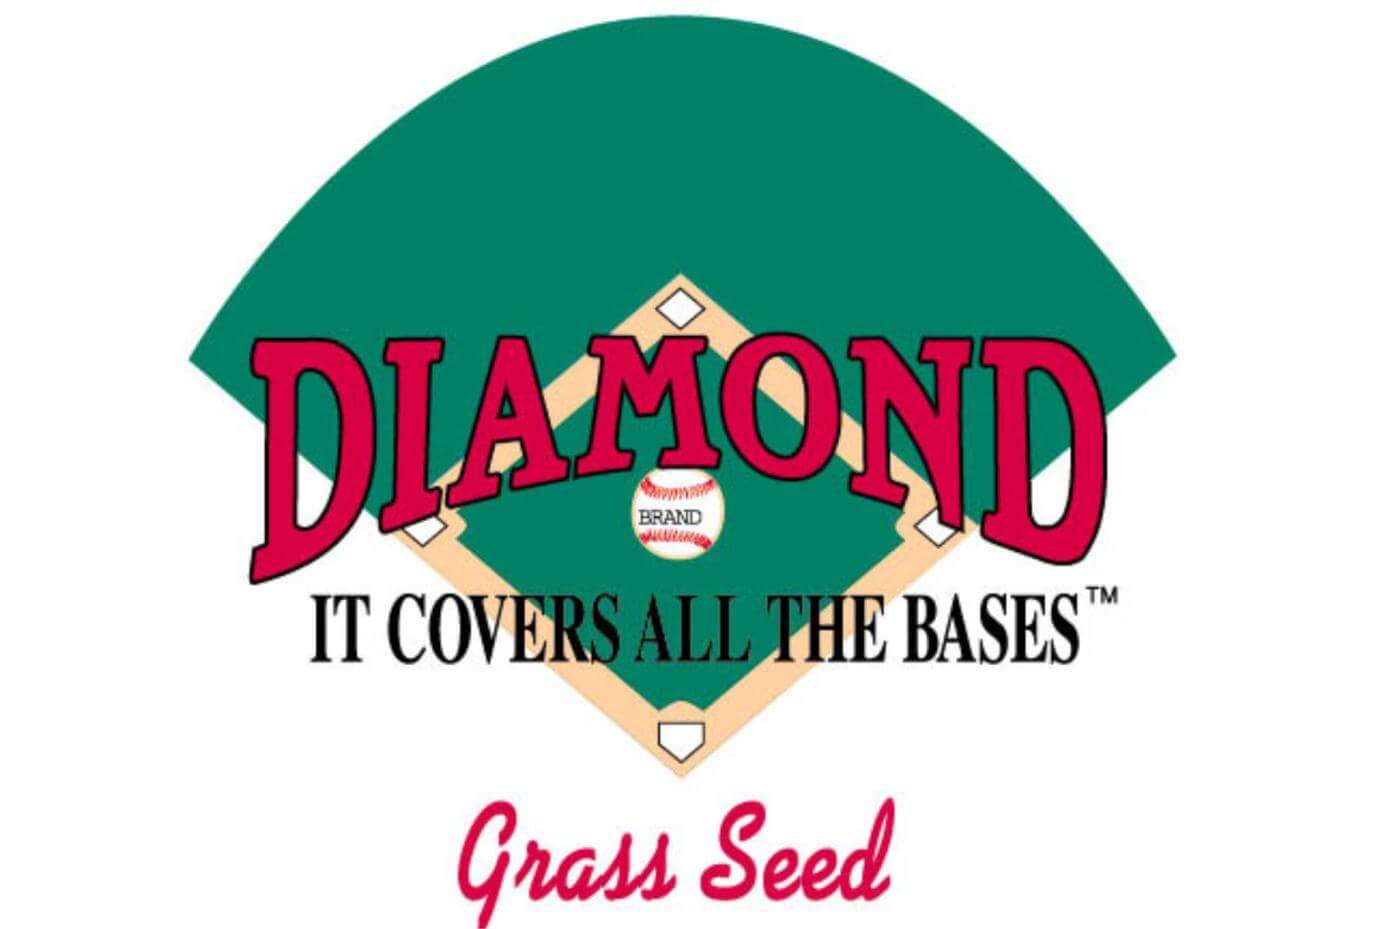 Diamond brand logo